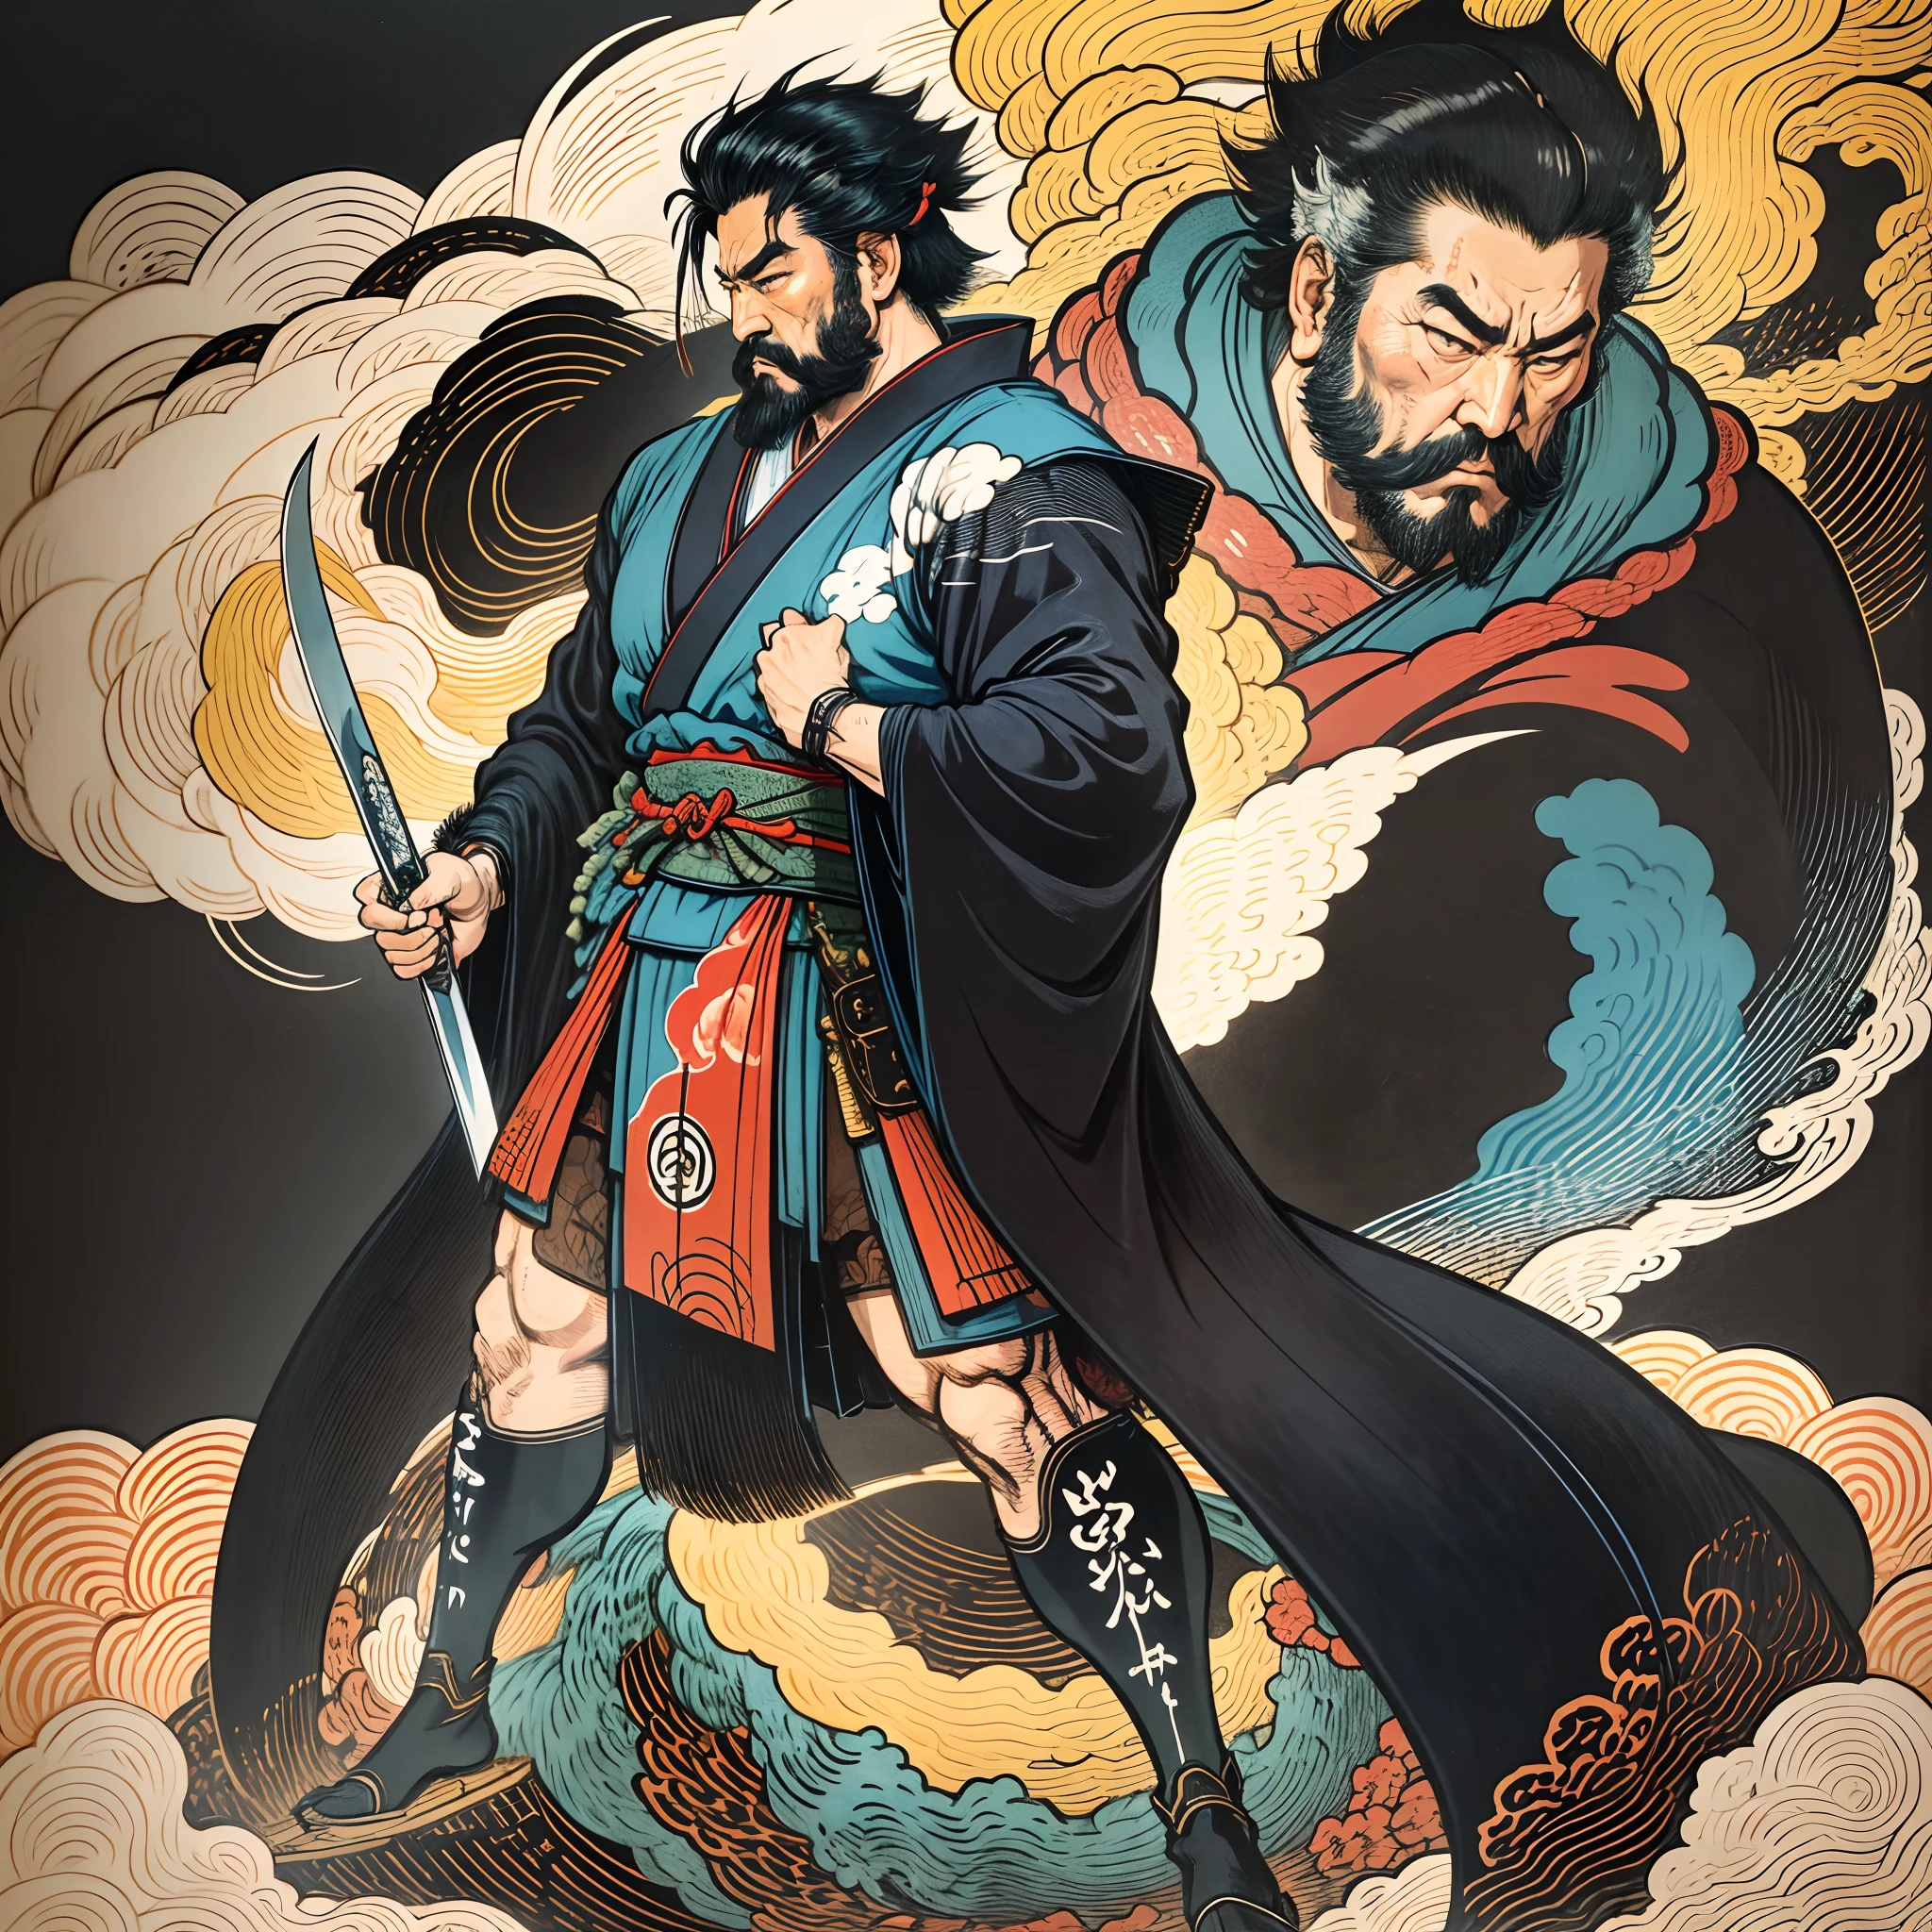 Es handelt sich um ein Ganzkörpergemälde mit natürlichen Farben und Strichzeichnungen im Stil von Katsushika Hokusai. Der Schwertkämpfer Miyamoto Musashi hat einen großen Körper wie ein starker Mann. Samurai von Japan. Er hat einen würdevollen, aber dennoch männlichen Ausdruck der Entschlossenheit, kurze schwarze Haare, und eine kurze, gestutzter Bart. Sein Oberkörper ist mit einem schwarzen Kimono bedeckt und sein Hakama ist knielang. In seiner rechten Hand hält er ein japanisches Schwert. in höchster Qualität, im hochauflösenden Ukiyo-e-Stil Blitze und wirbelnde Flammen des Meisterwerks. Miyamoto Musashi steht mit Gesicht und Körper nach vorne gerichtet, sein Rücken gerade.